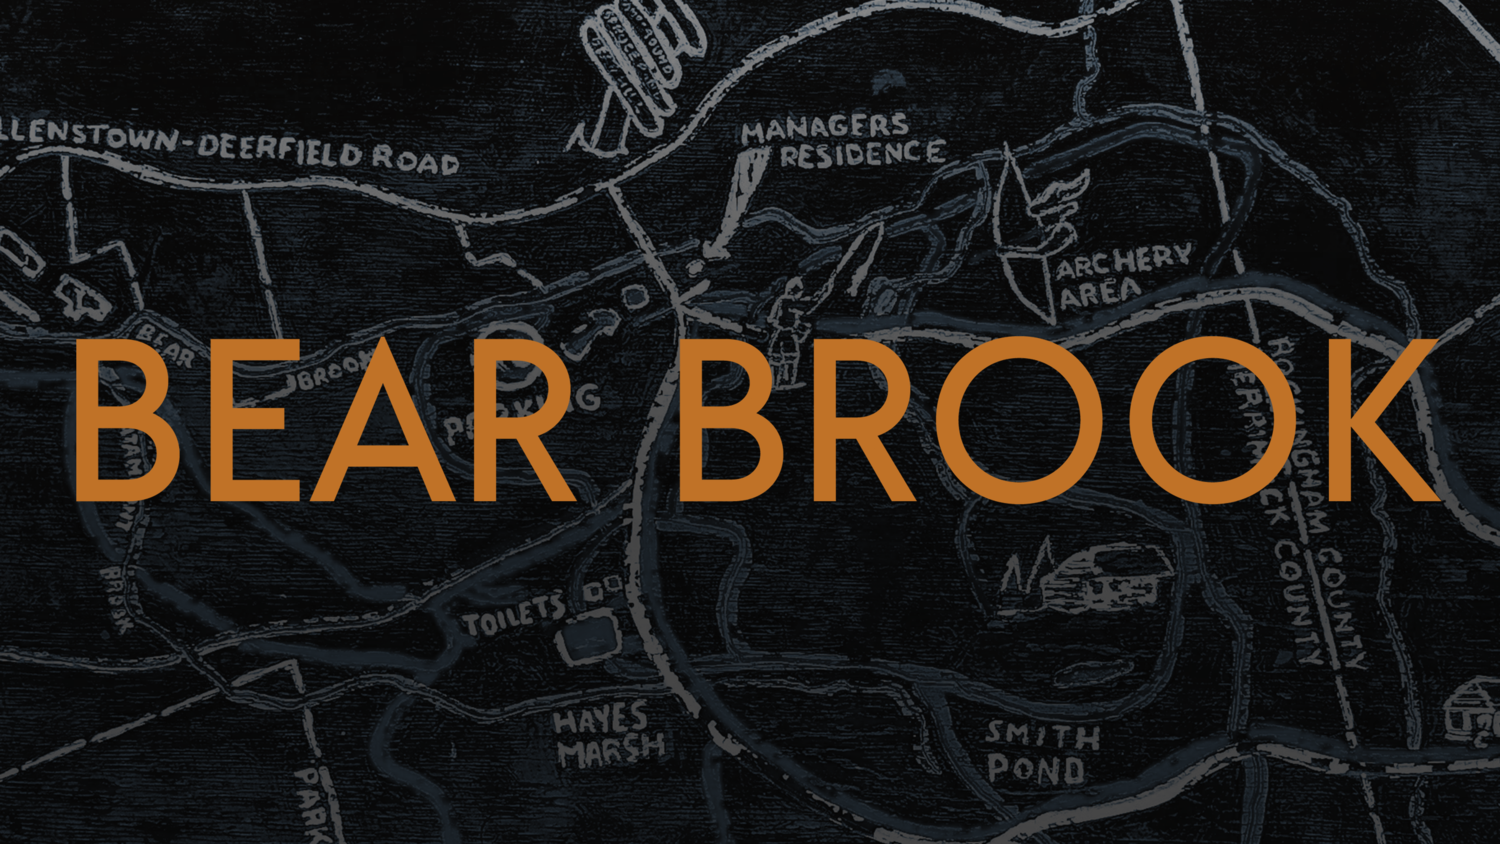 Image of bear brook text